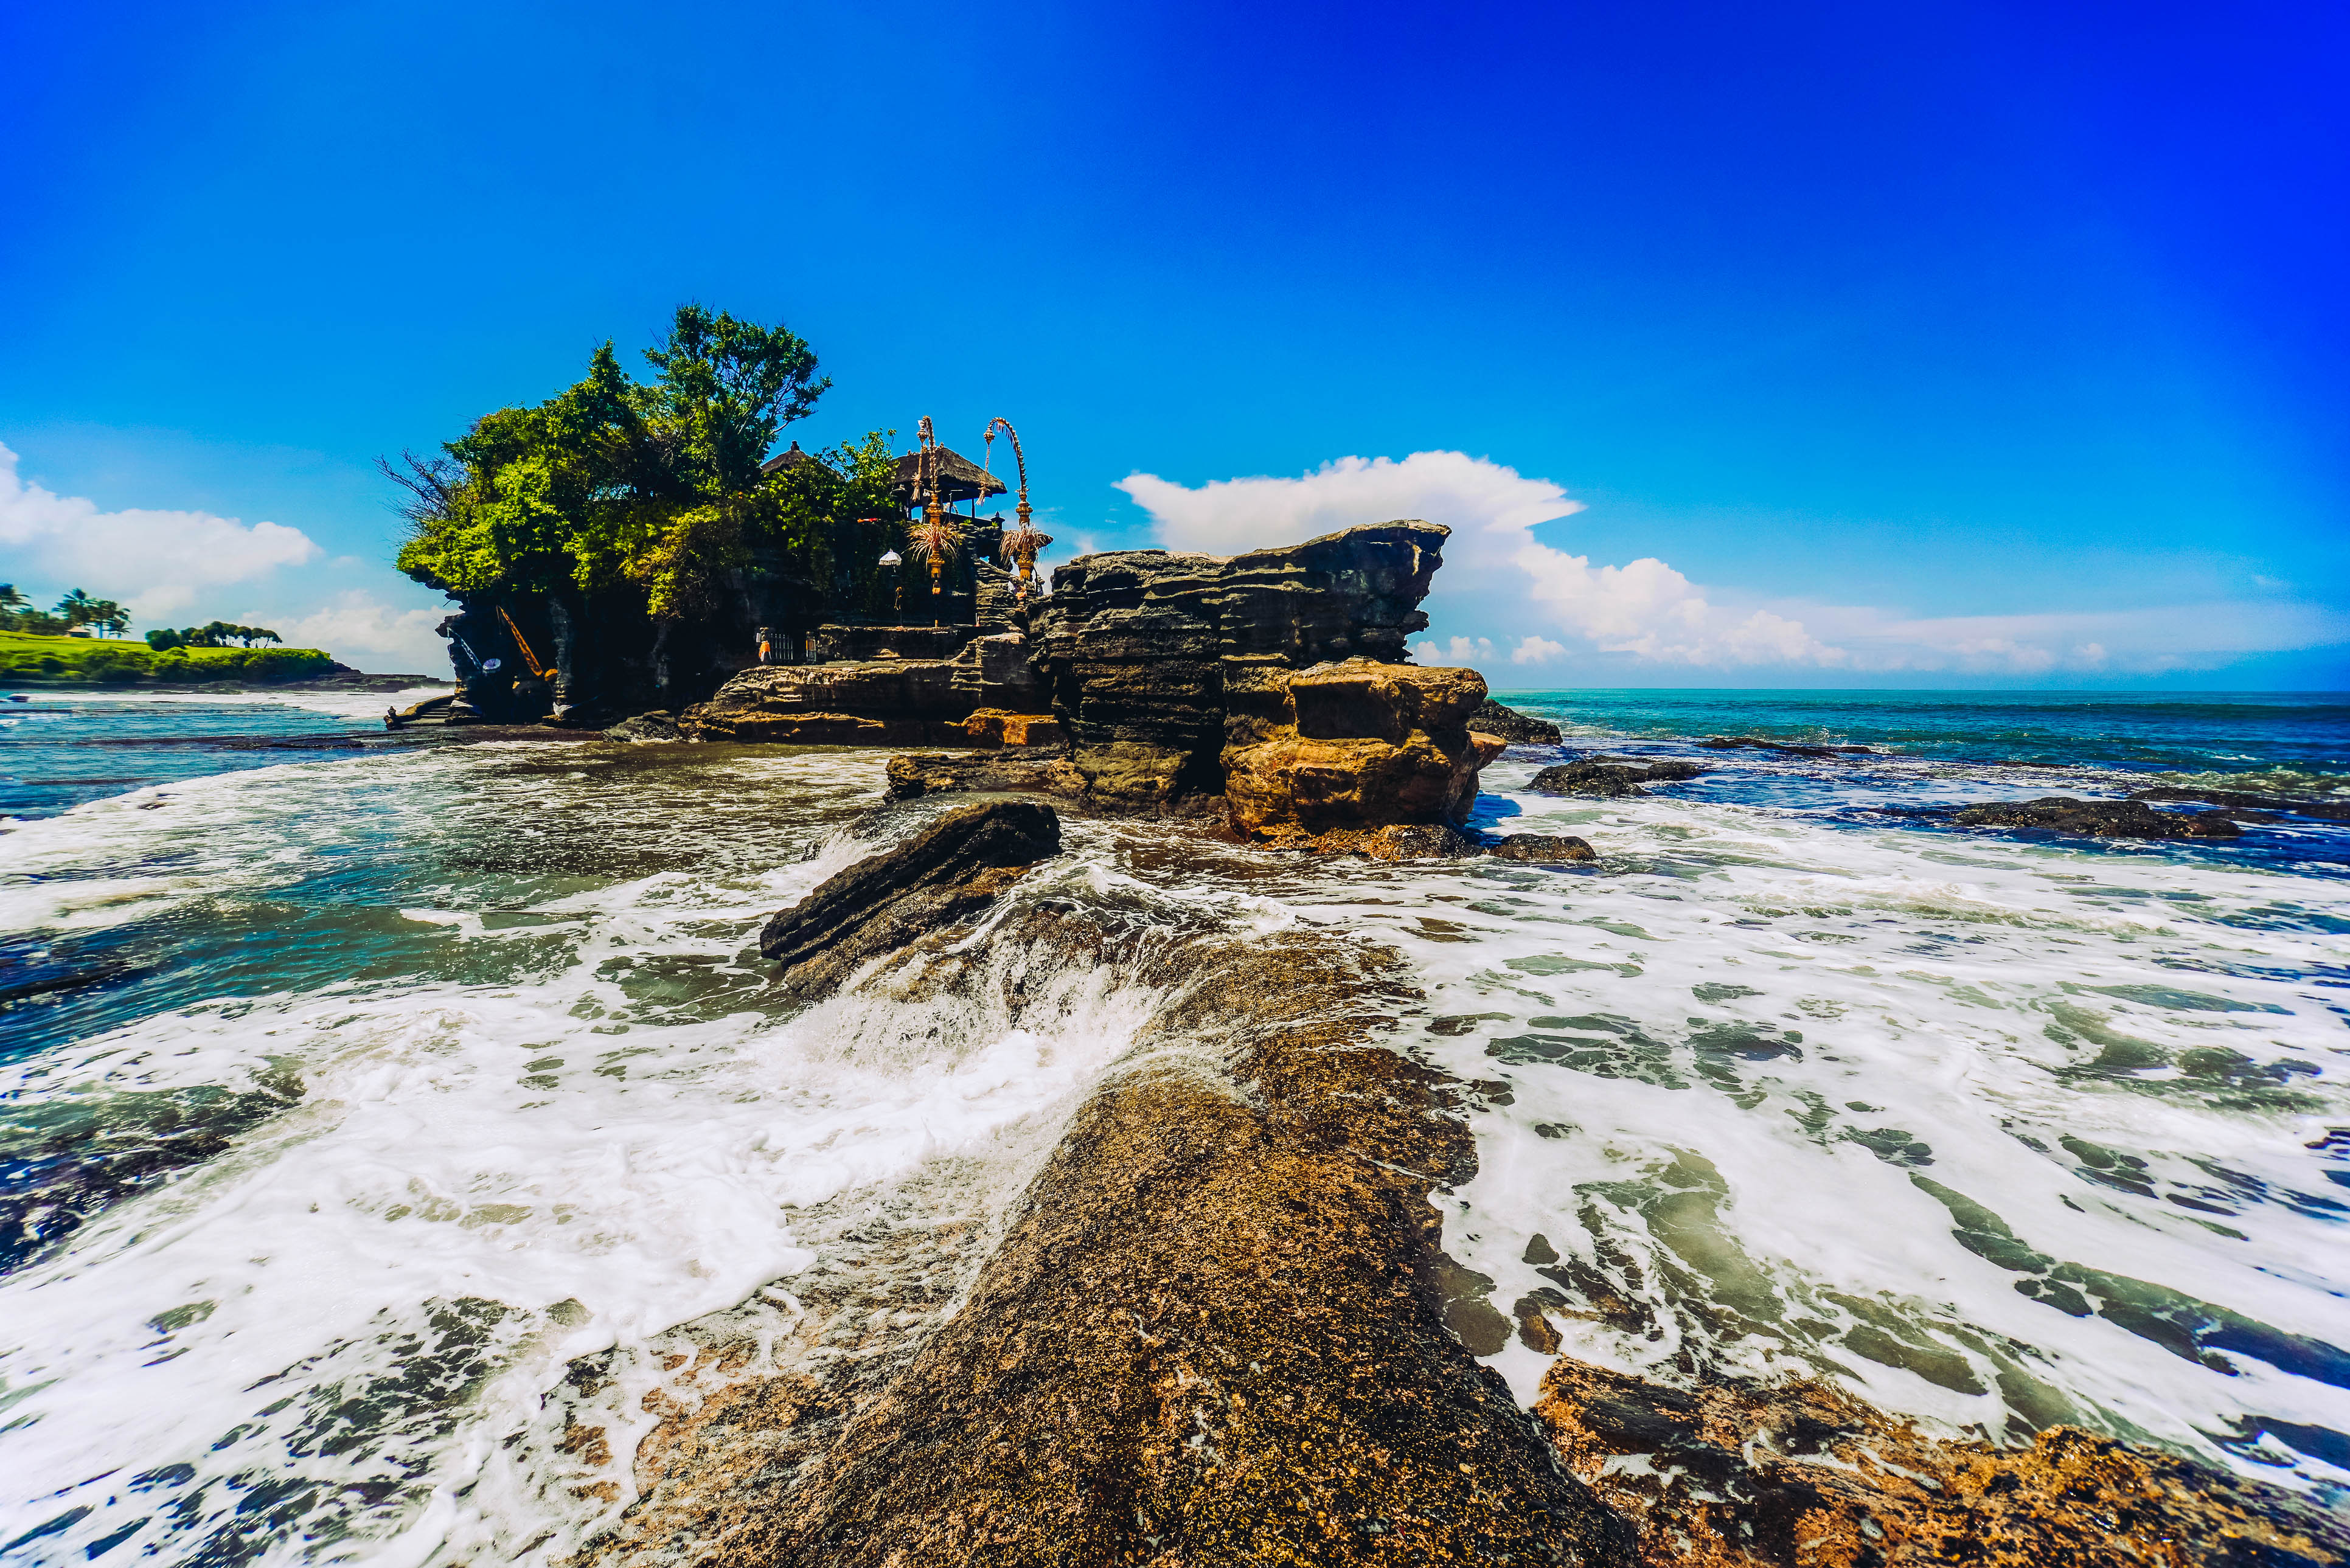 Qué ver en Bali